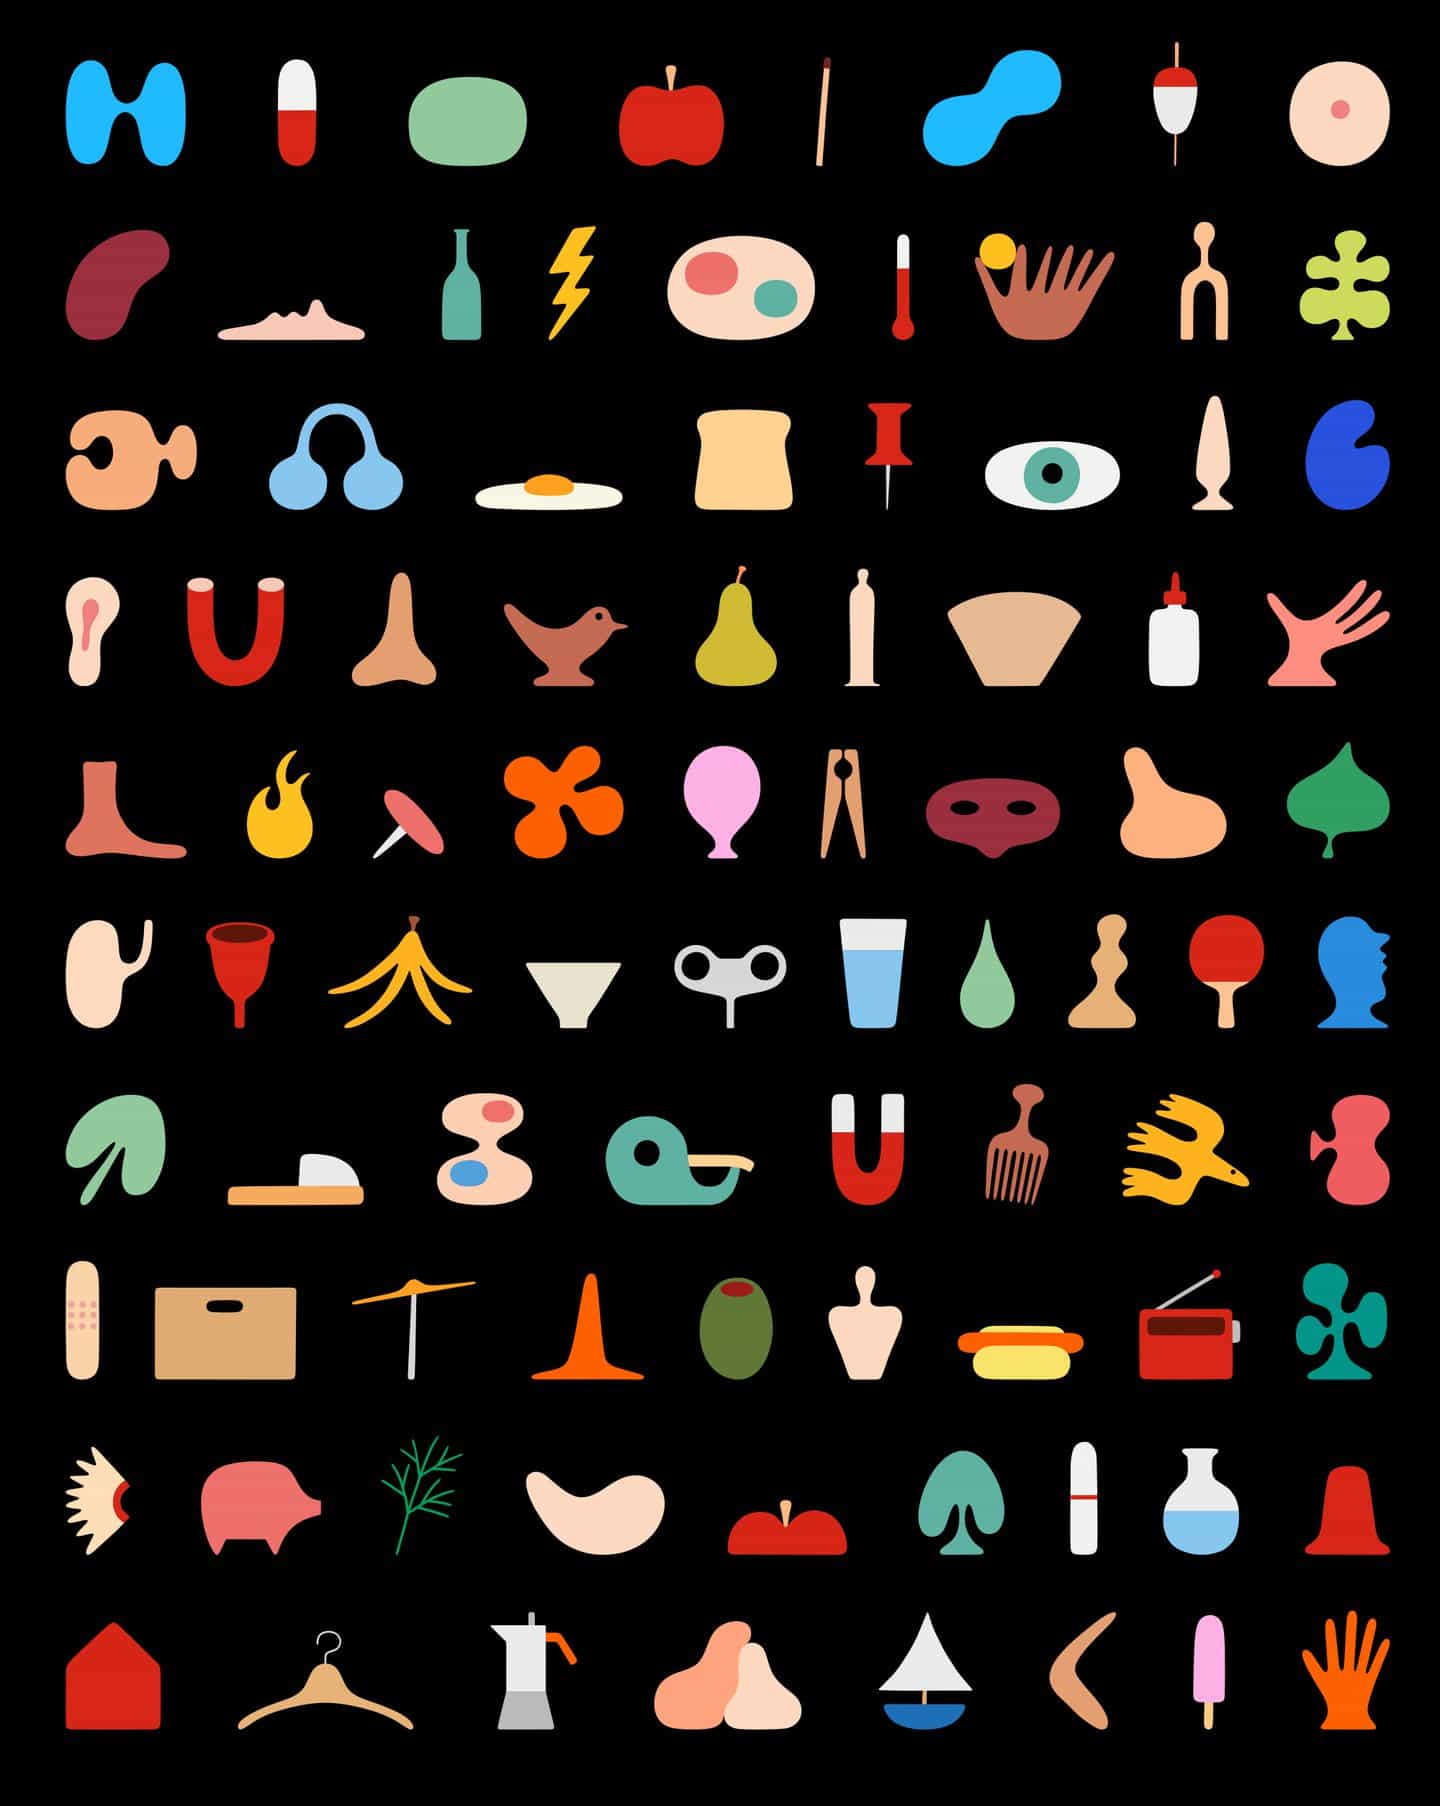 El Emojis que siempre quiso (y algunos que no sabía que necesitaba) por el ilustrador Andreas Samuelsson